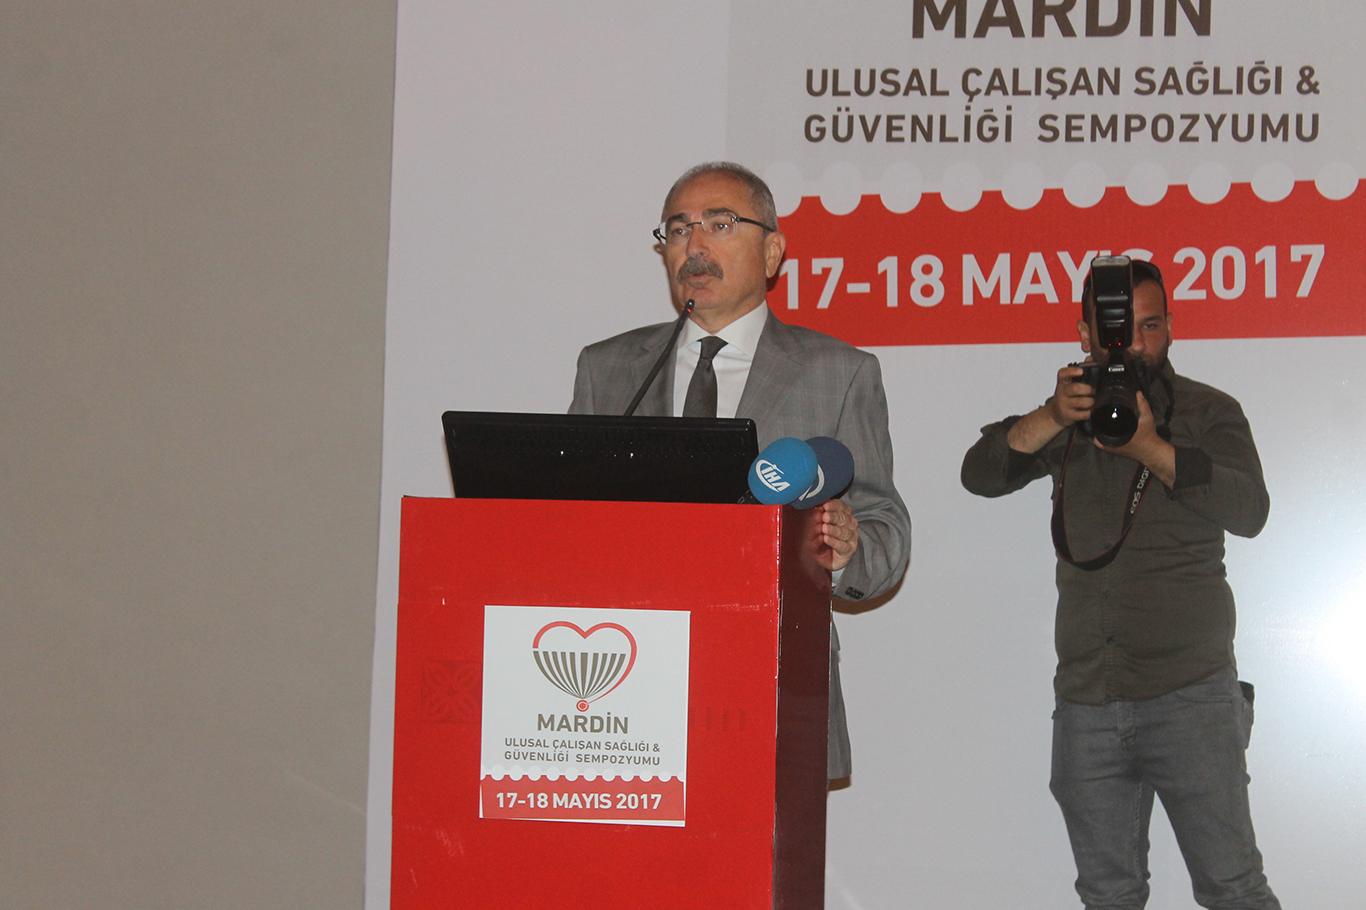 Mardin'de "Ulusal Çalışan Sağlığı ve Güvenlik Sempozyumu"  